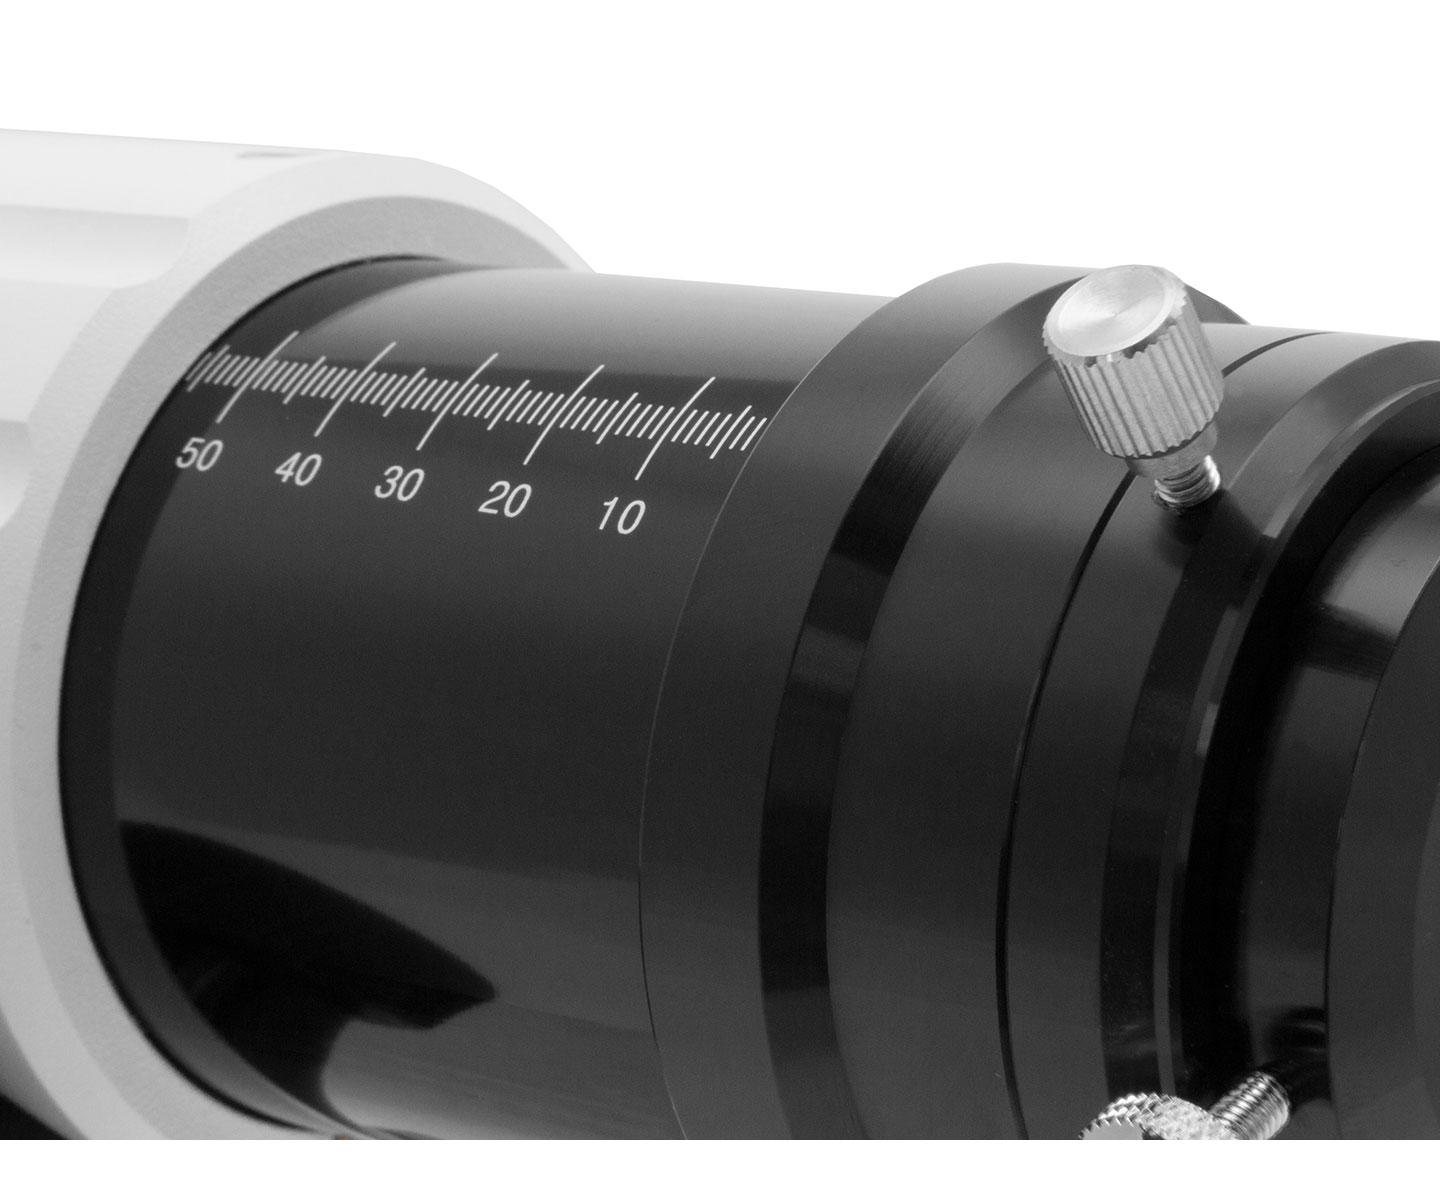  TS-Optics rifrattore apocromatico Photoline FPL-53 doppietto 102mm f/7 